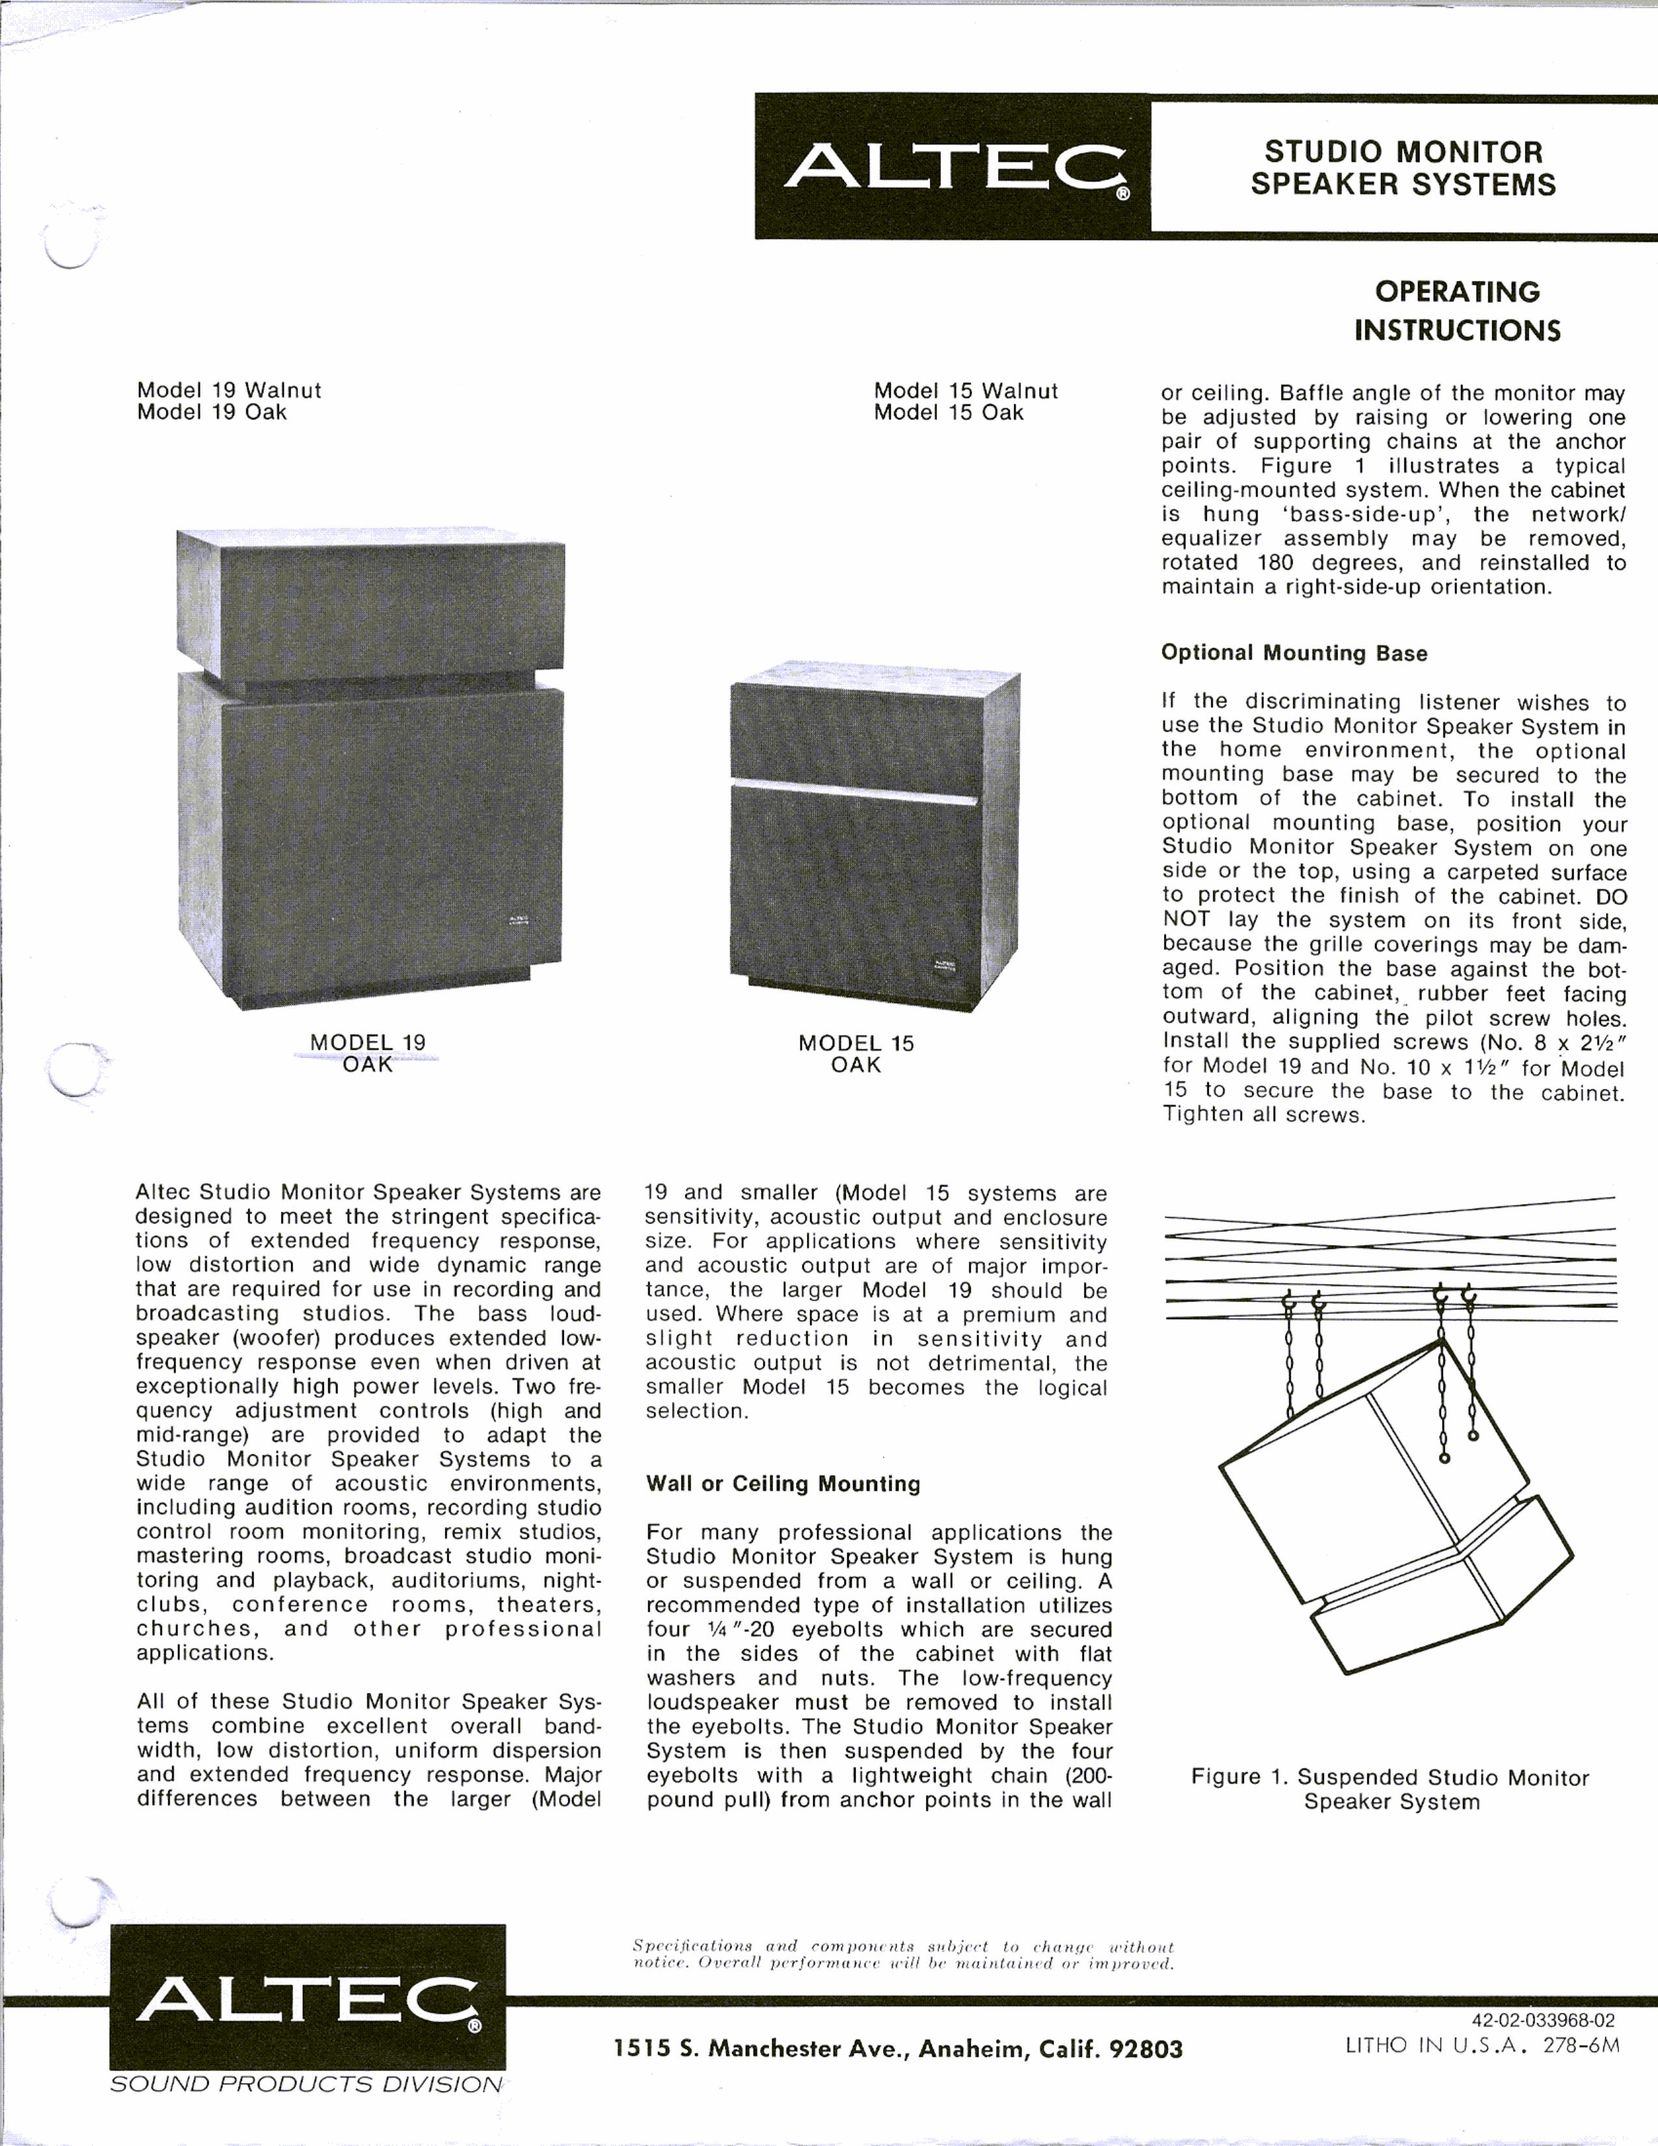 Altec Lansing 15 Oak Portable Speaker User Manual